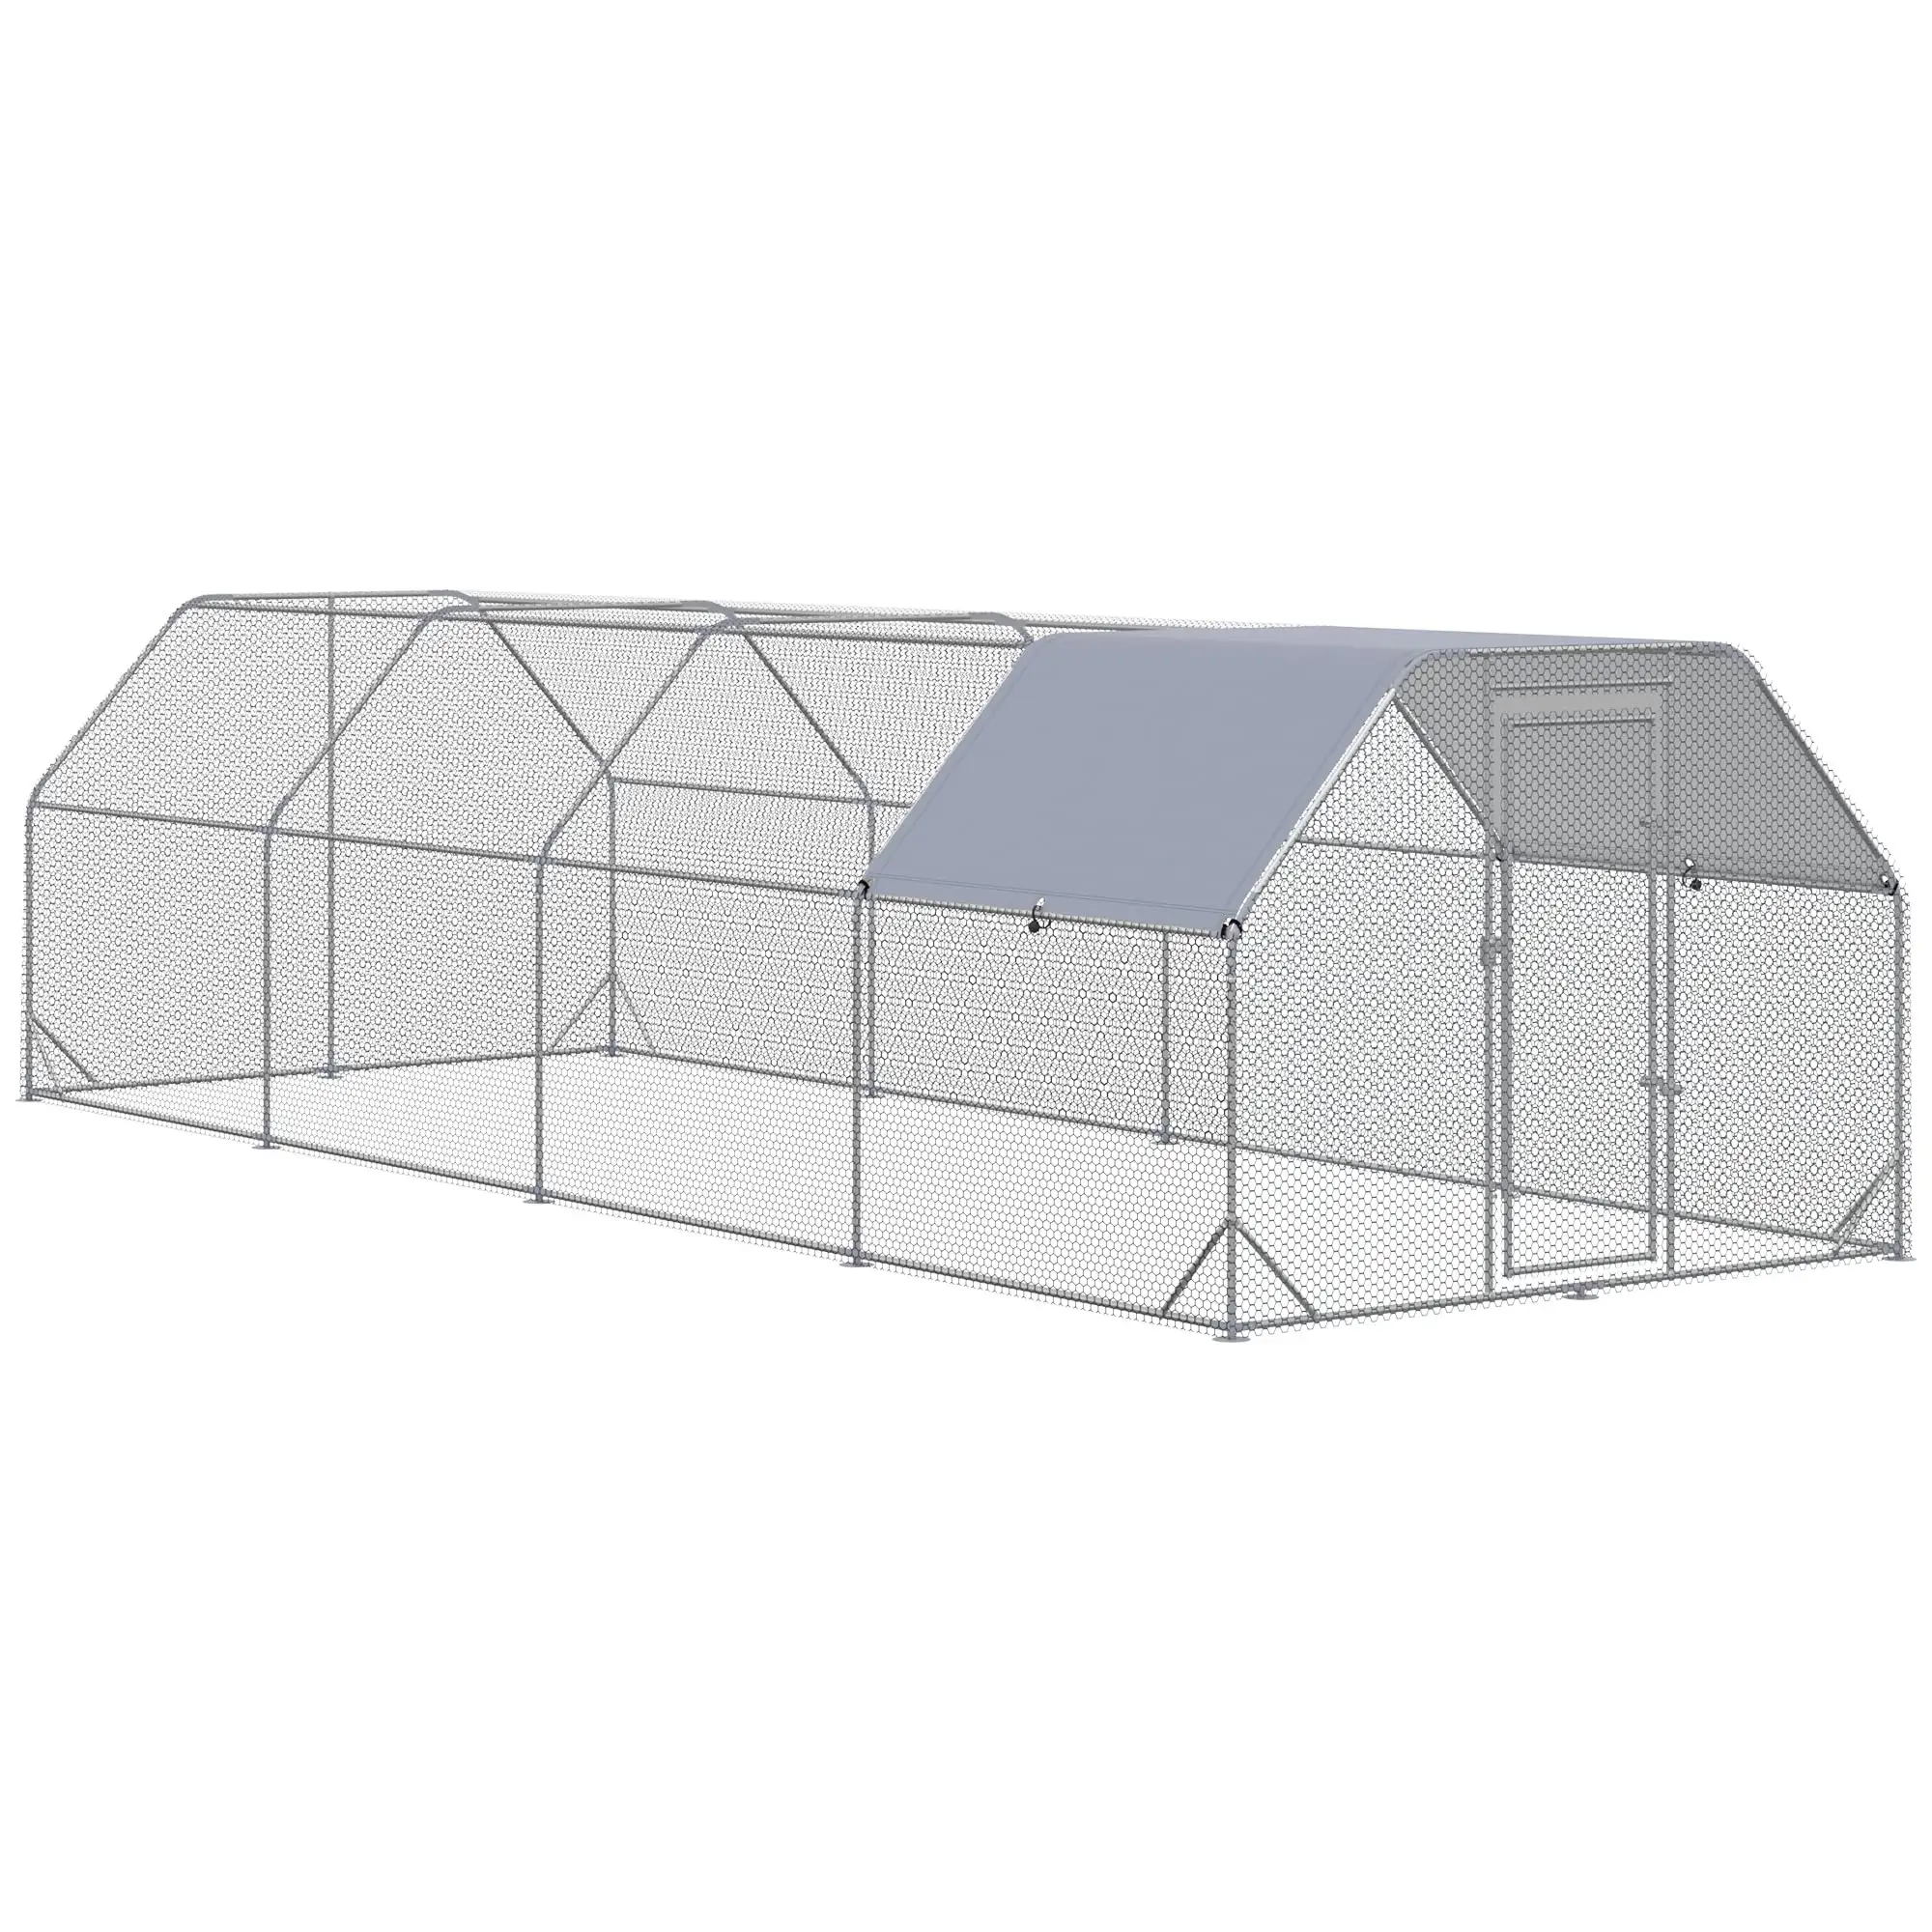 Chilochilo muslimit Large Metal Chicken Coop Run con copertura Walk-in Outdoor Pen Fence Cage pollaio per cortile con tetto